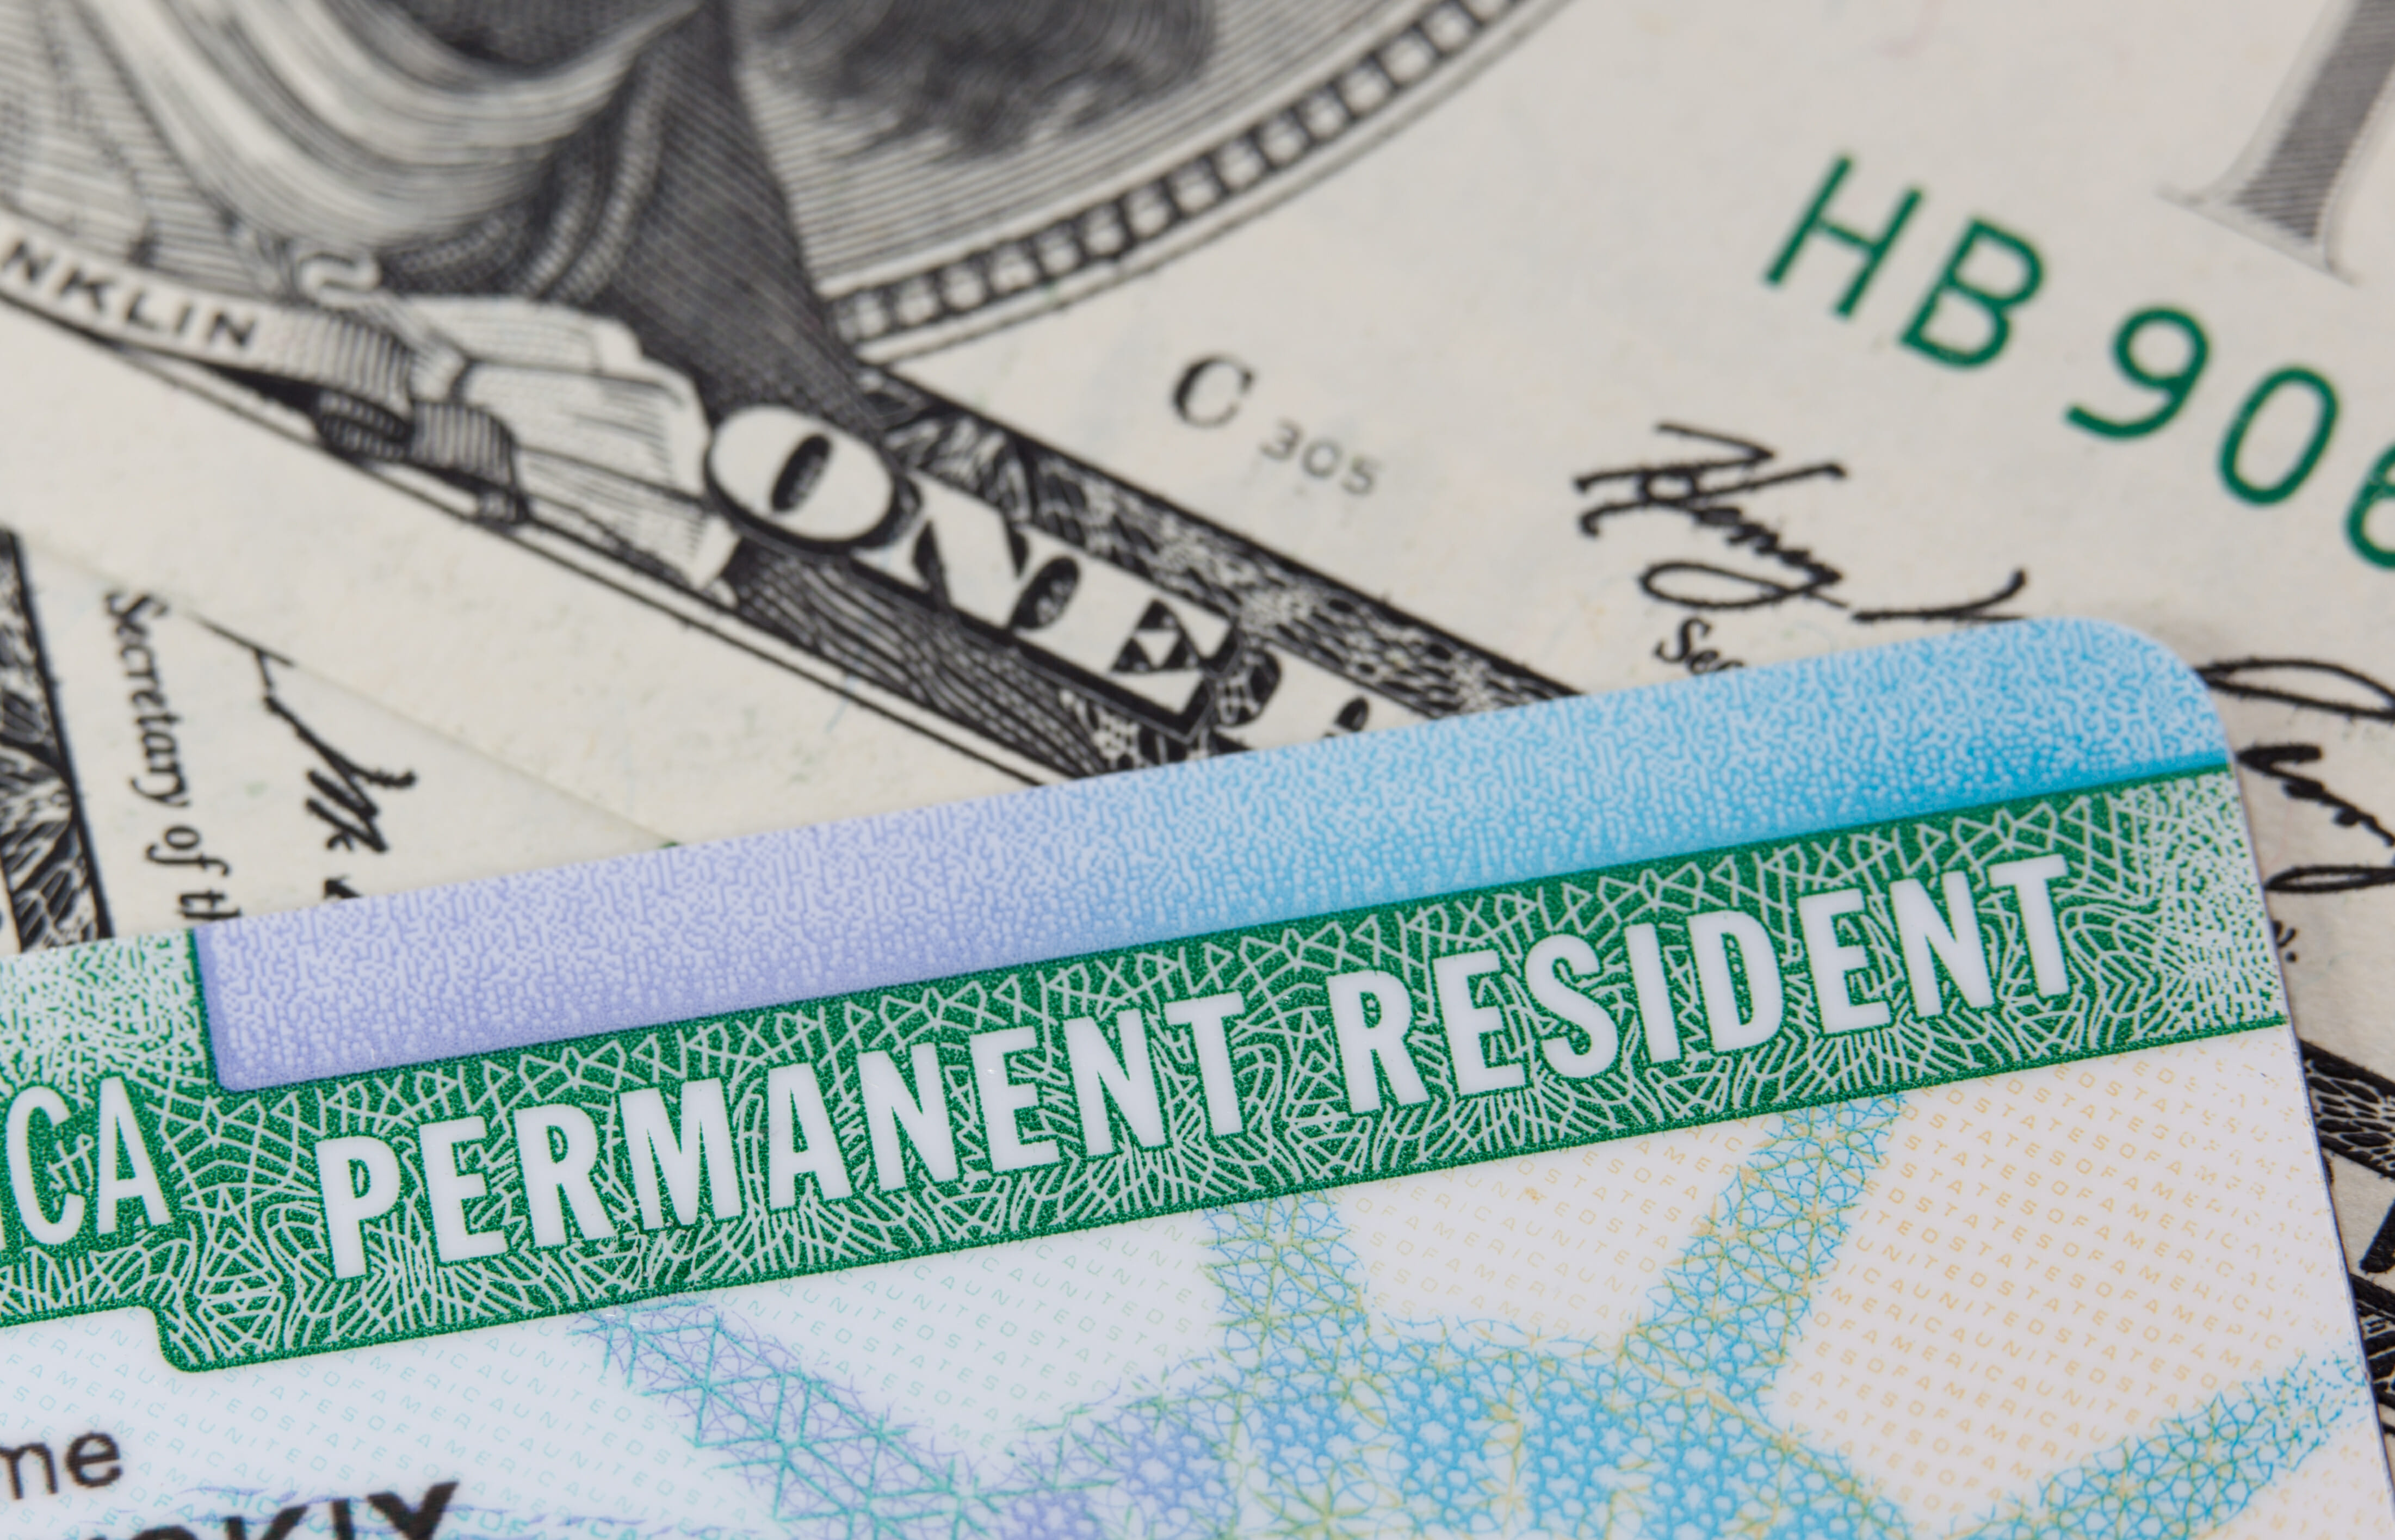 Residência permanente legal (green card) por meio do visto EB-3